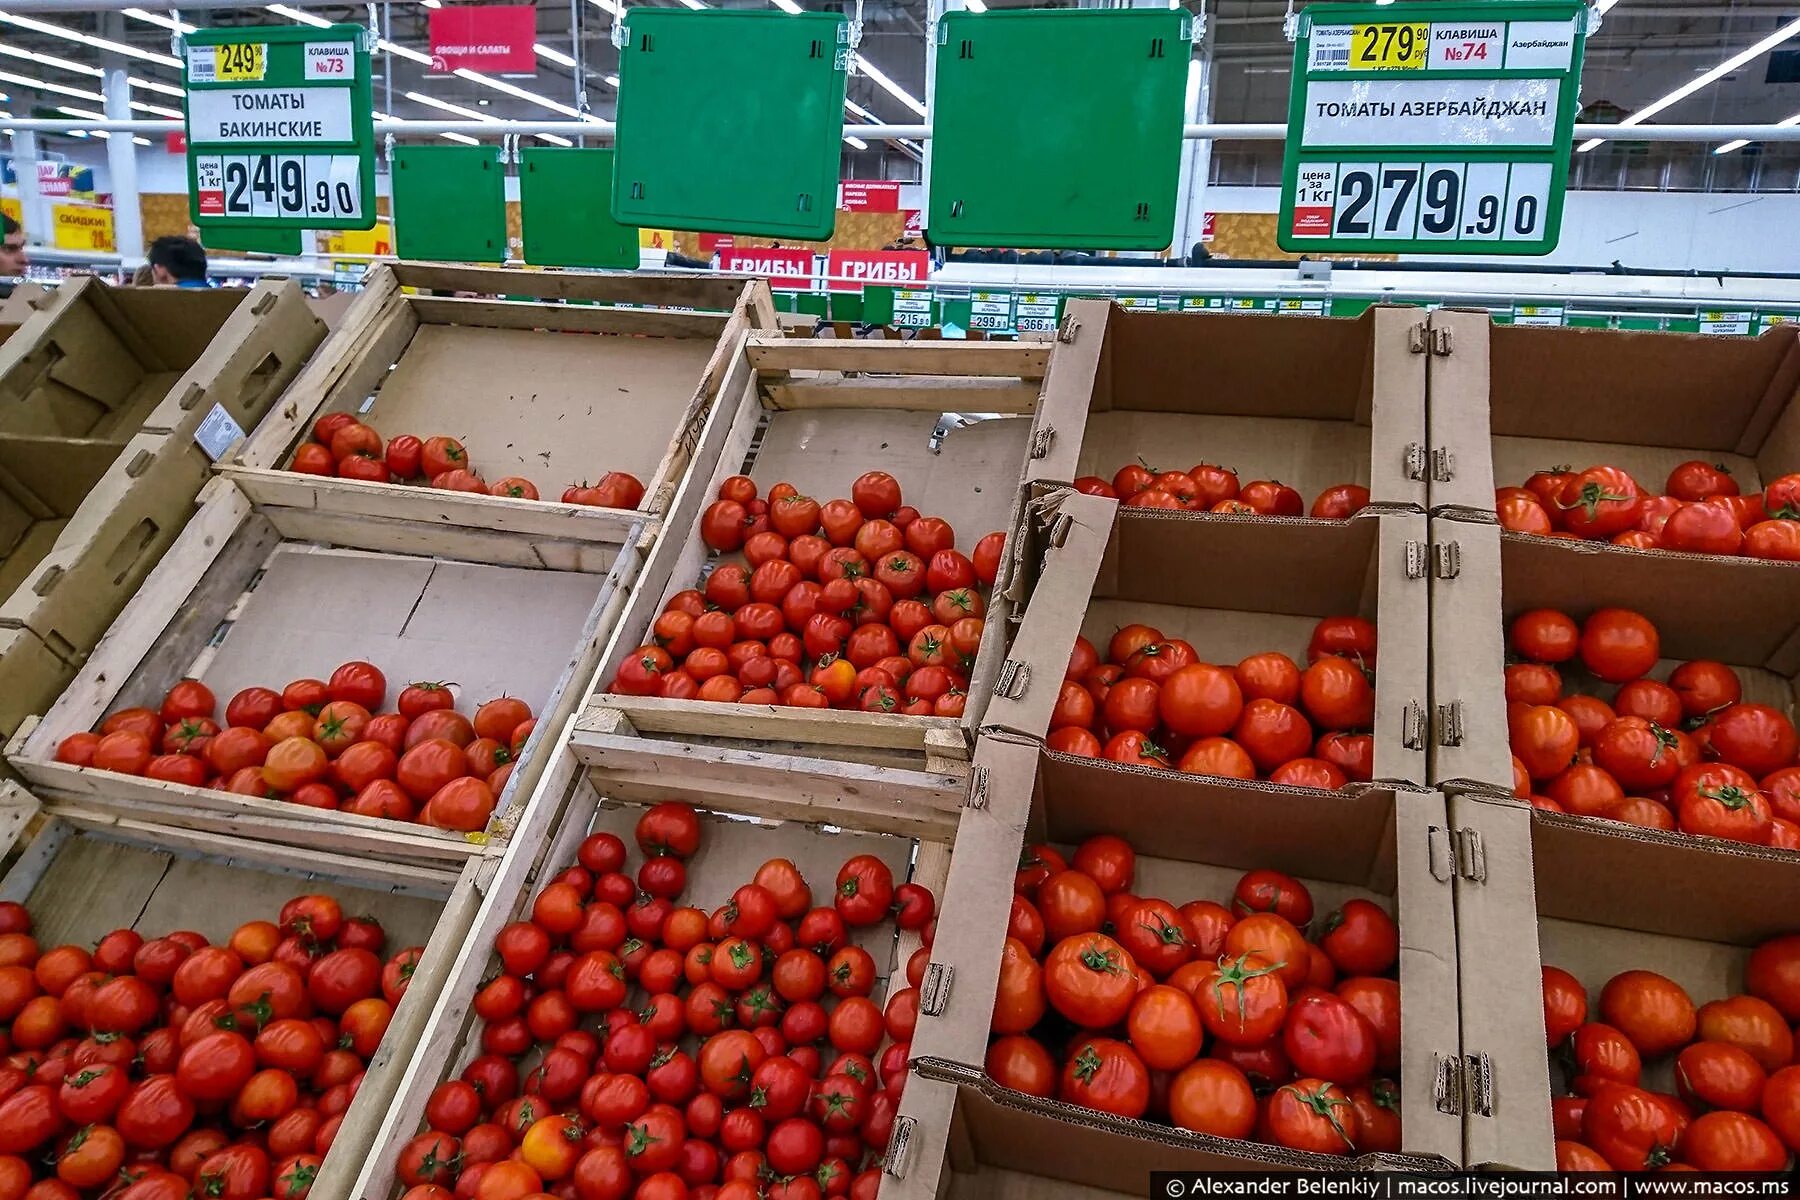 Сколько стоит помидоры в магазинах. Помидоры в Ашане. Узбекские помидоры. Израильские помидоры. Помидоры Бакинские.